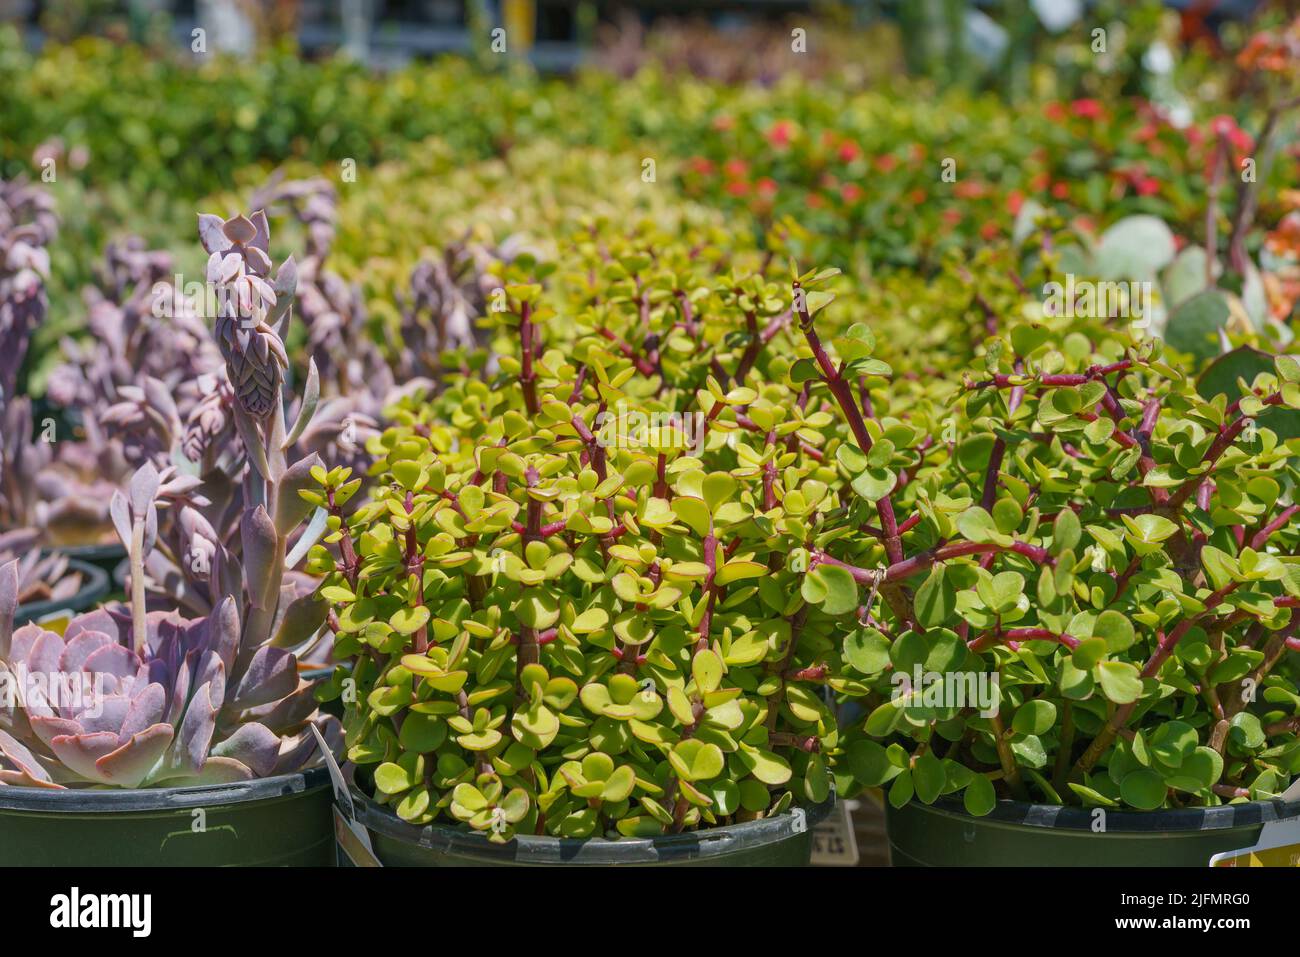 Varietà di piante succulente. I tipi popolari di succulenti si avvicinano. Foto Stock